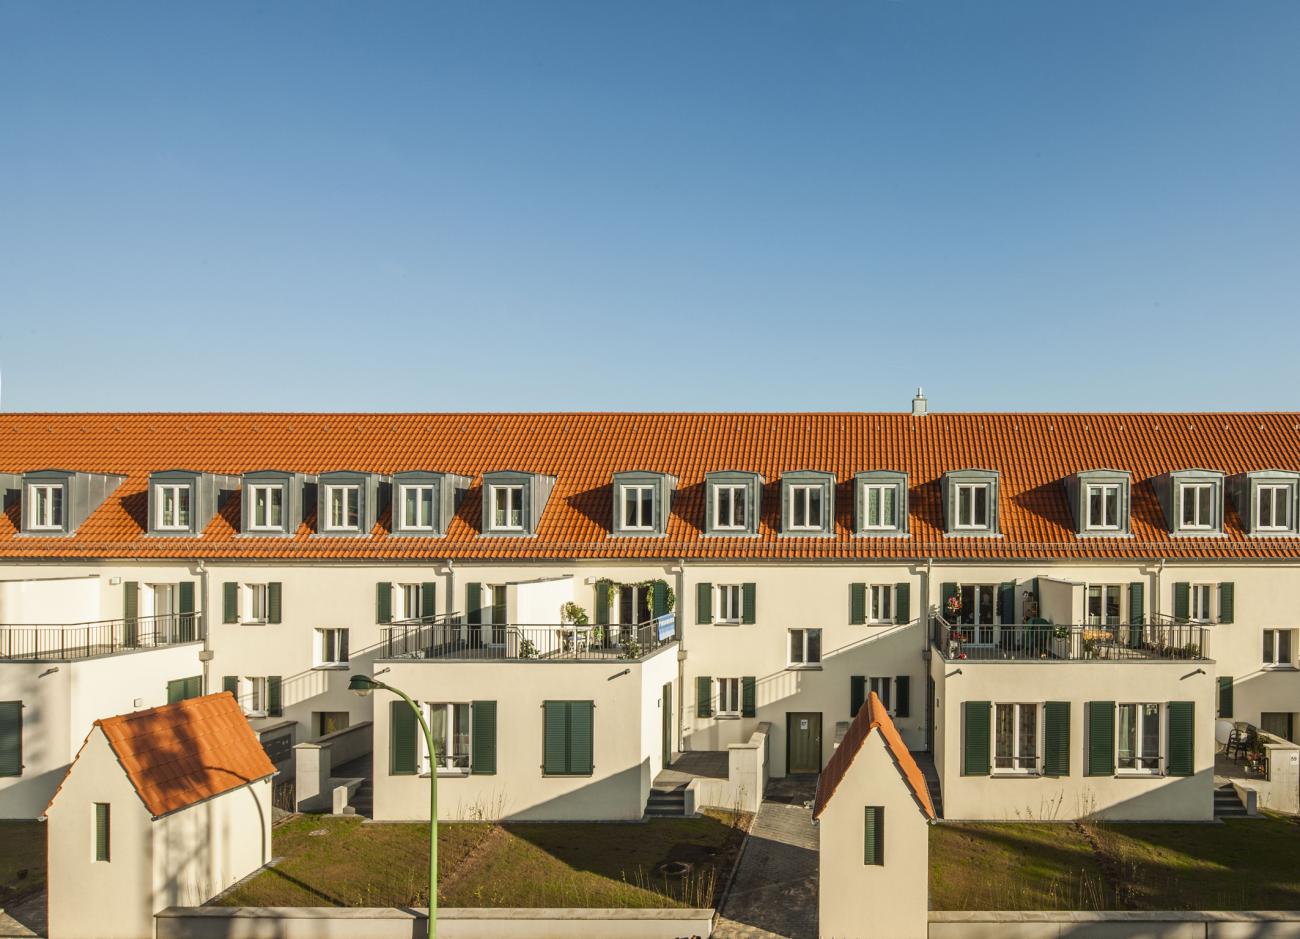 Die energetische Sanierung lohnt sich für Bauherren und Bewohner, wie die Riederwald-Siedlung in Frankfurt am Main eindrucksvoll zeigt. Foto: Deutsche Poroton/ Johannes Vogt